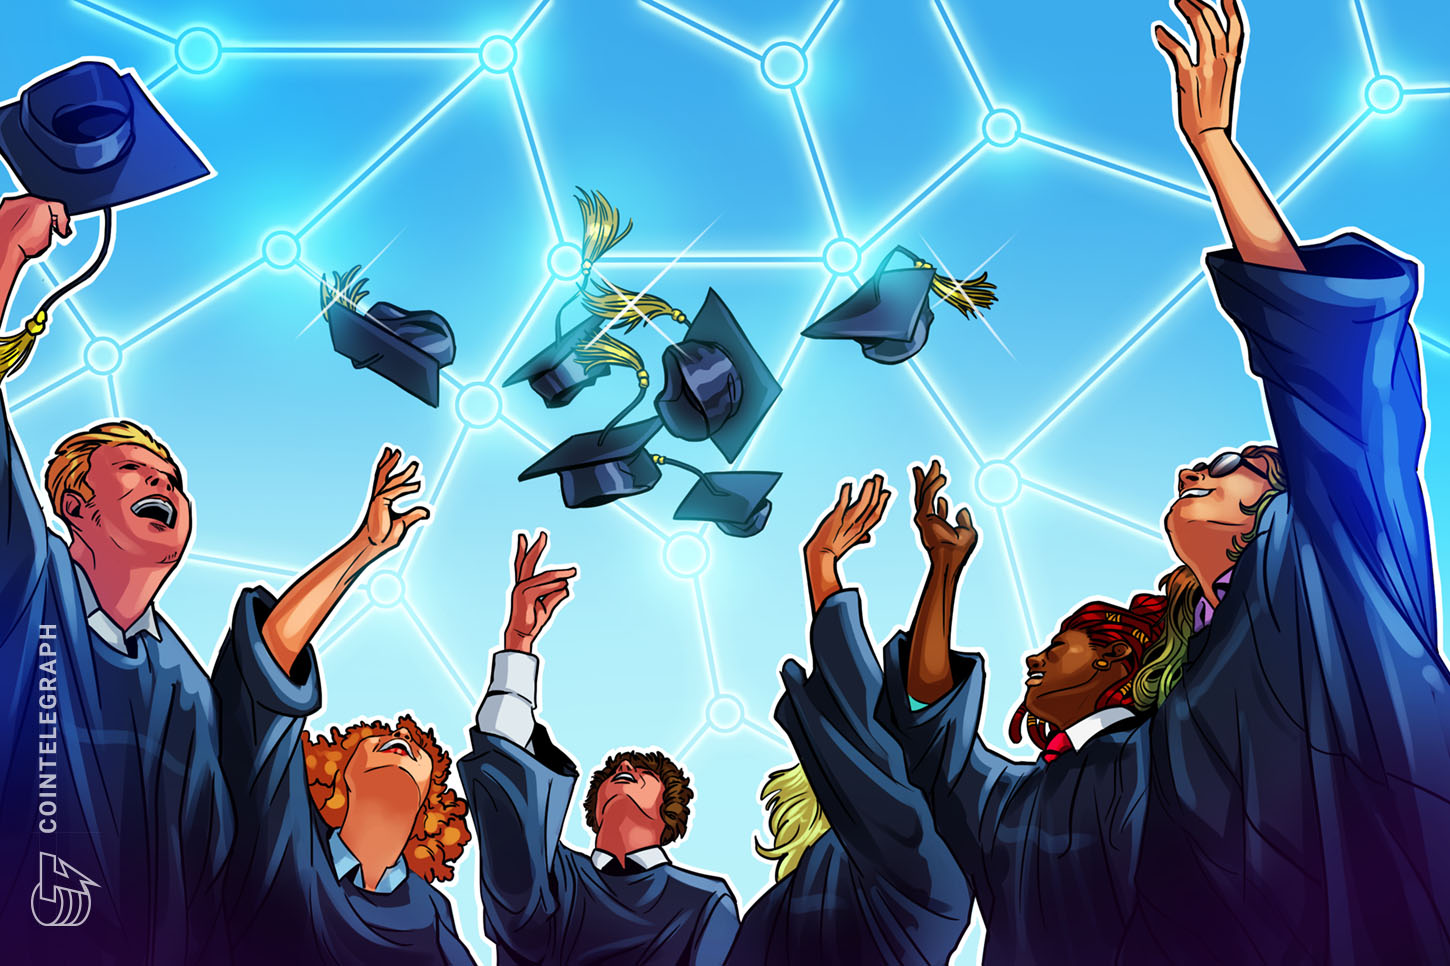 CoinMarketCap launches crypto schooling portal ‘CMC Alexandria’